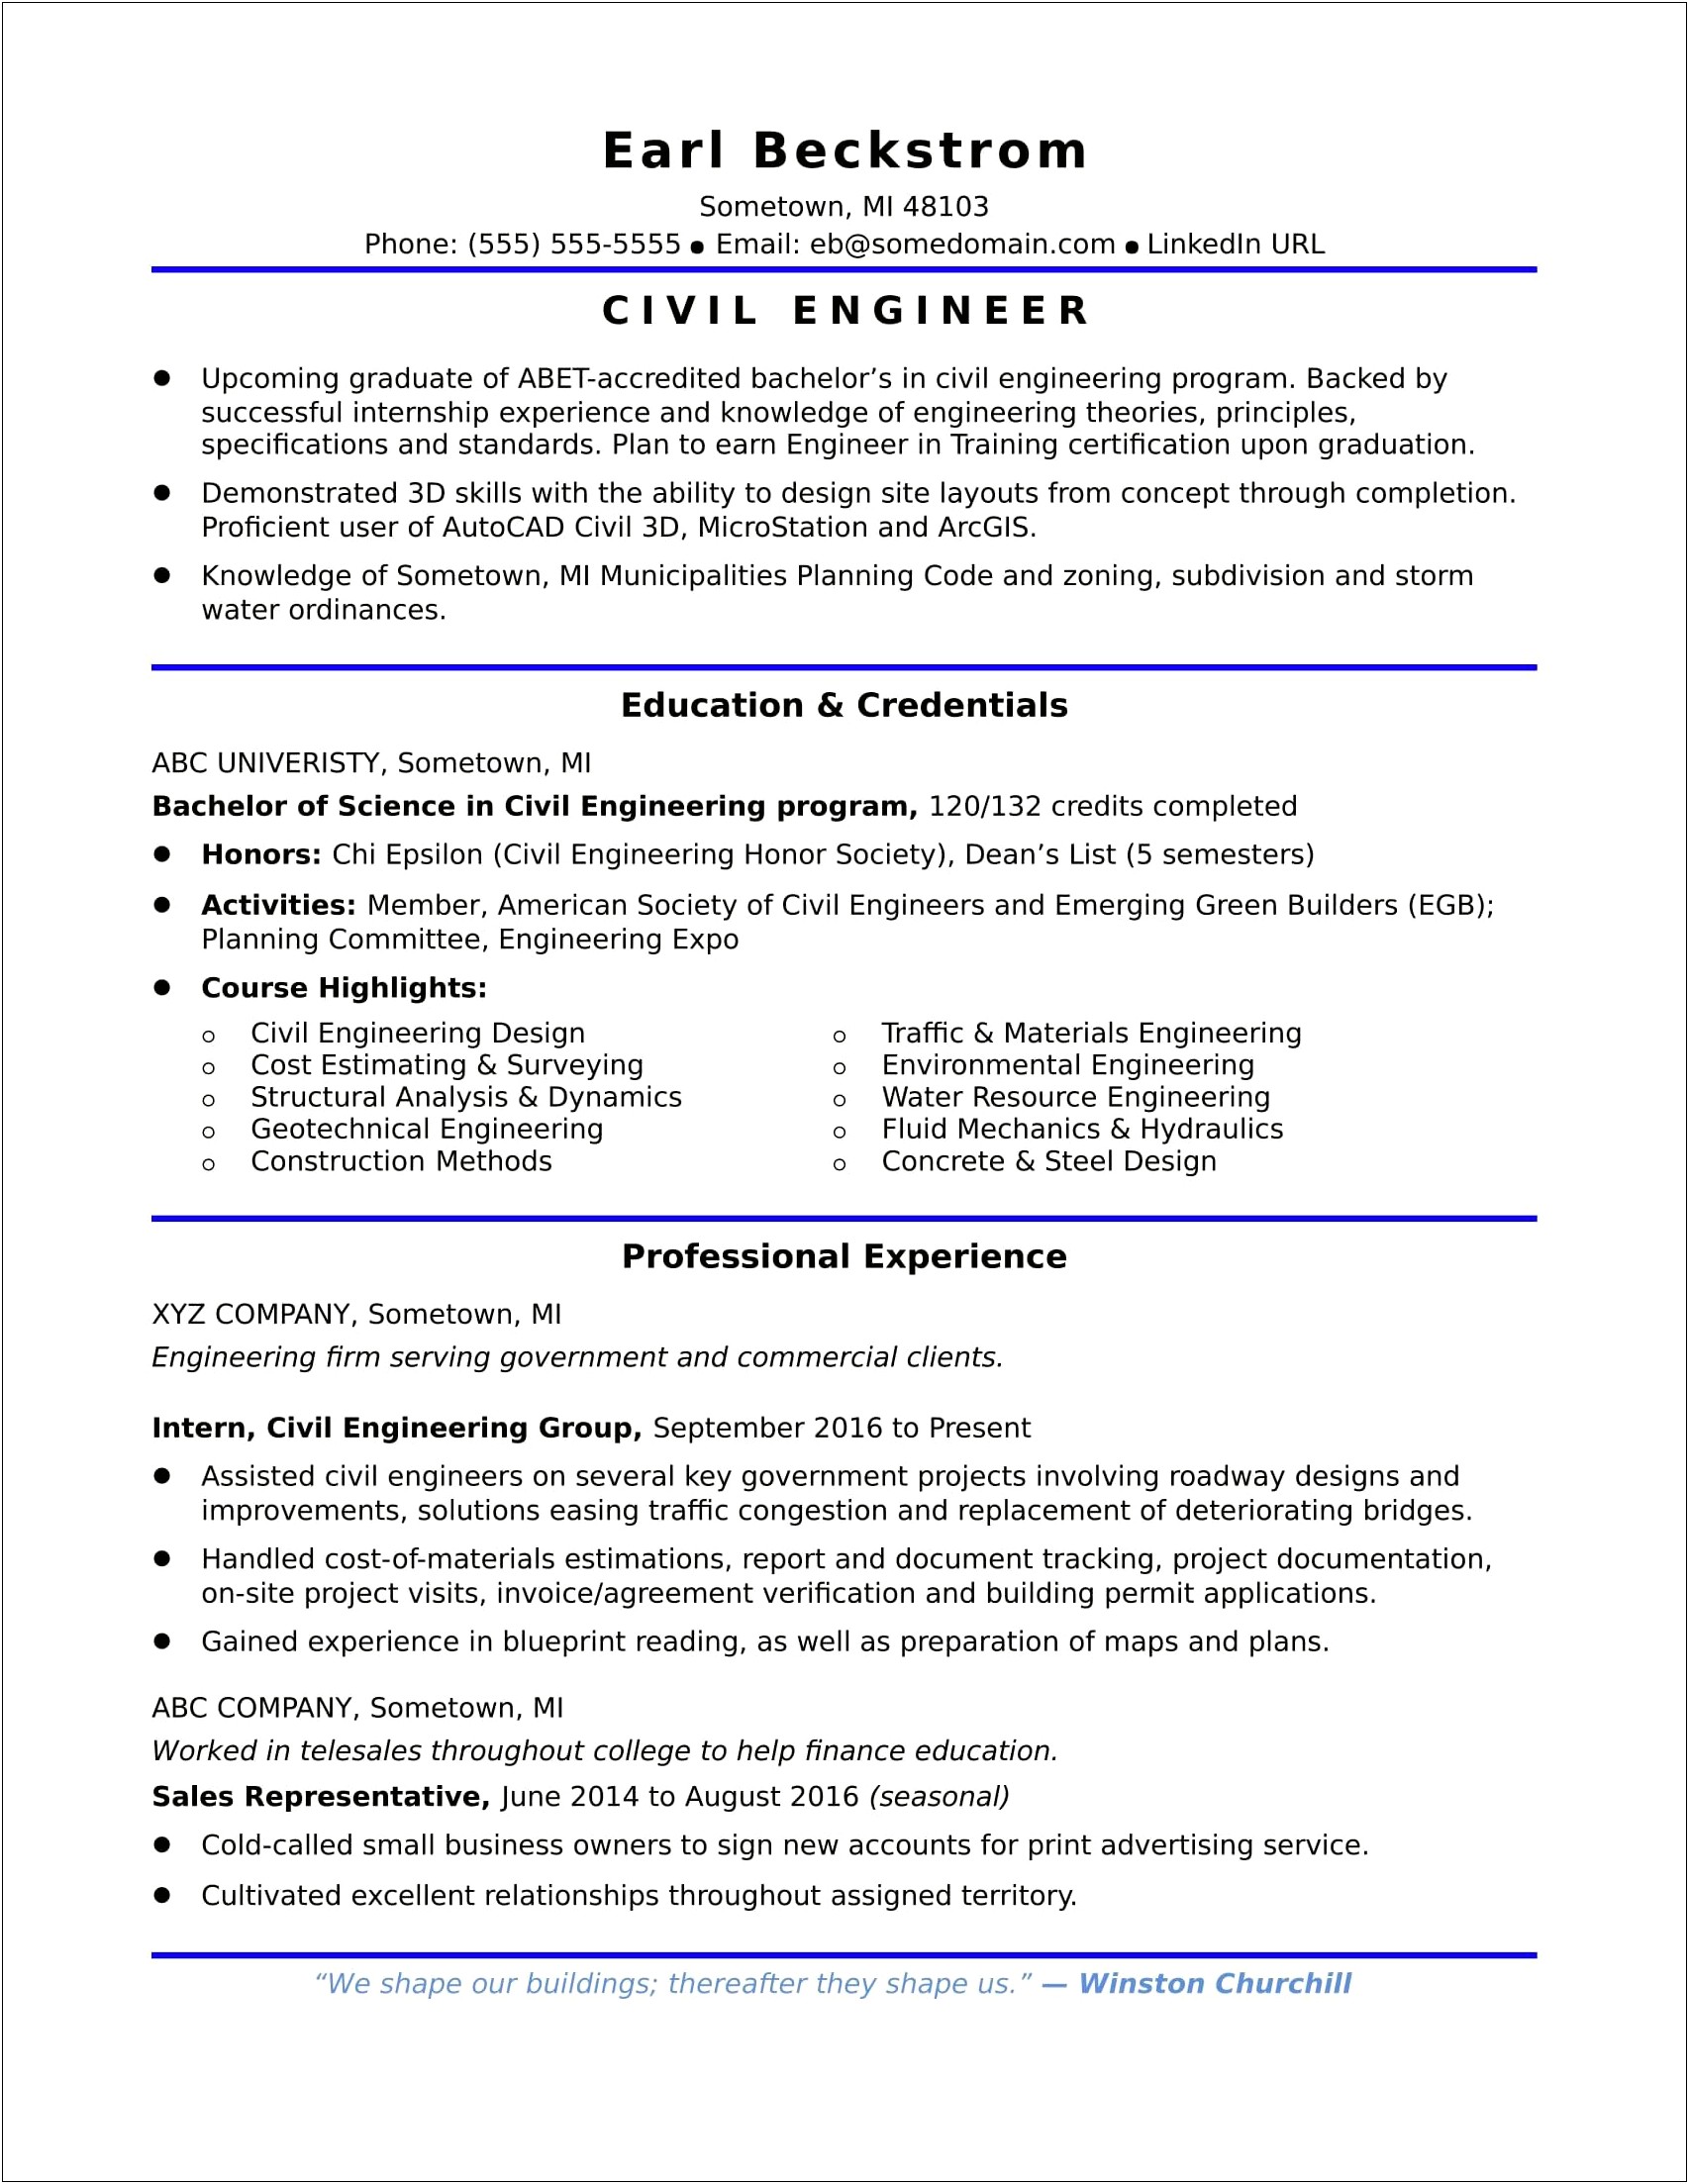 Begin Engineering Career Resume Objective